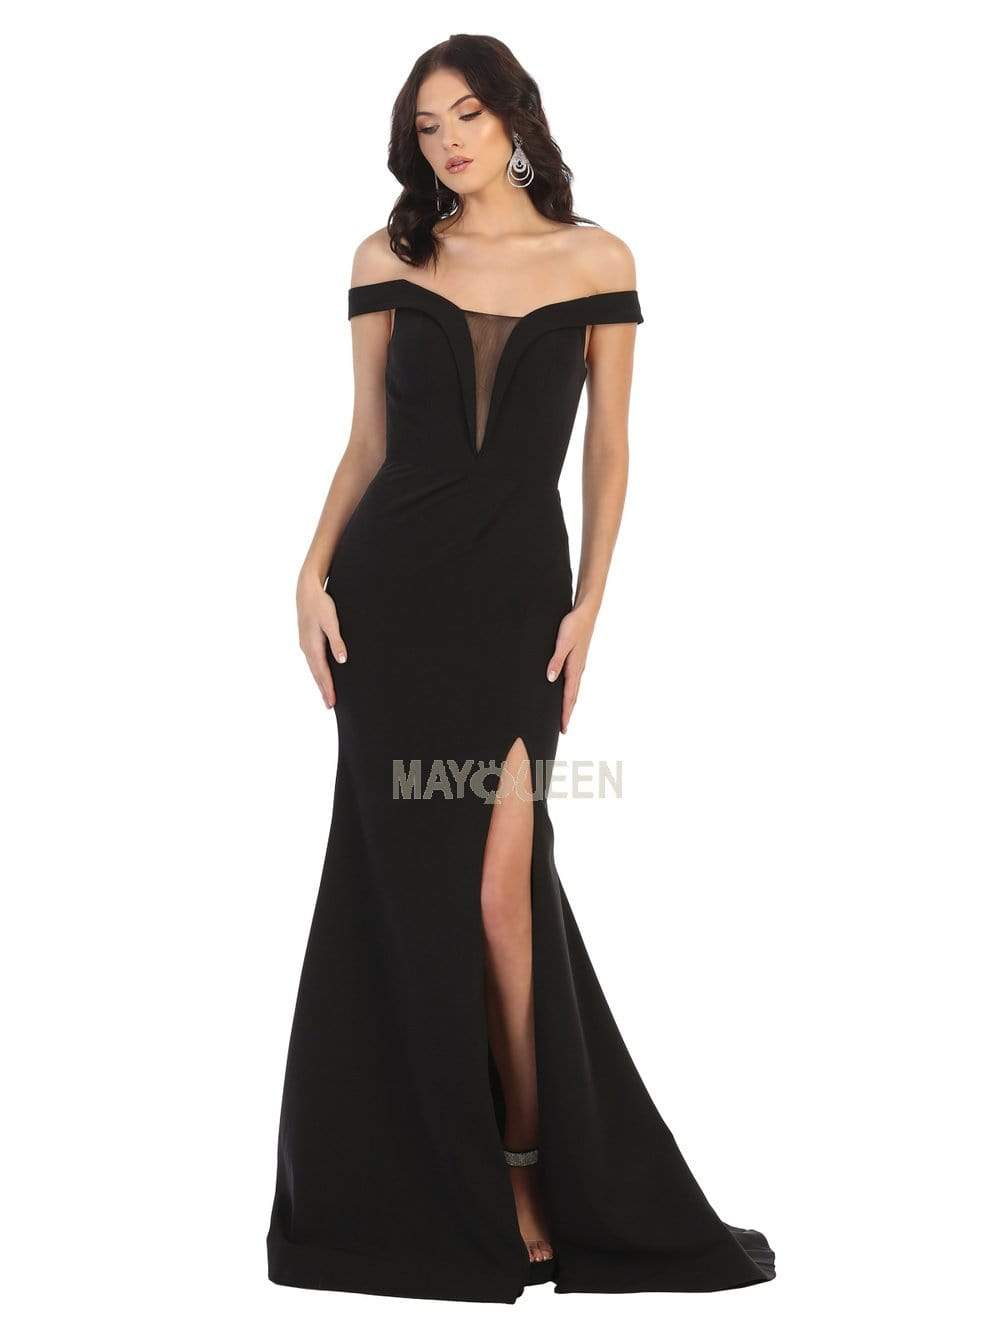 May Queen - MQ1748 Foldover Plunge Off Shoulder High Slit Dress Evening Dresses 4 / Black